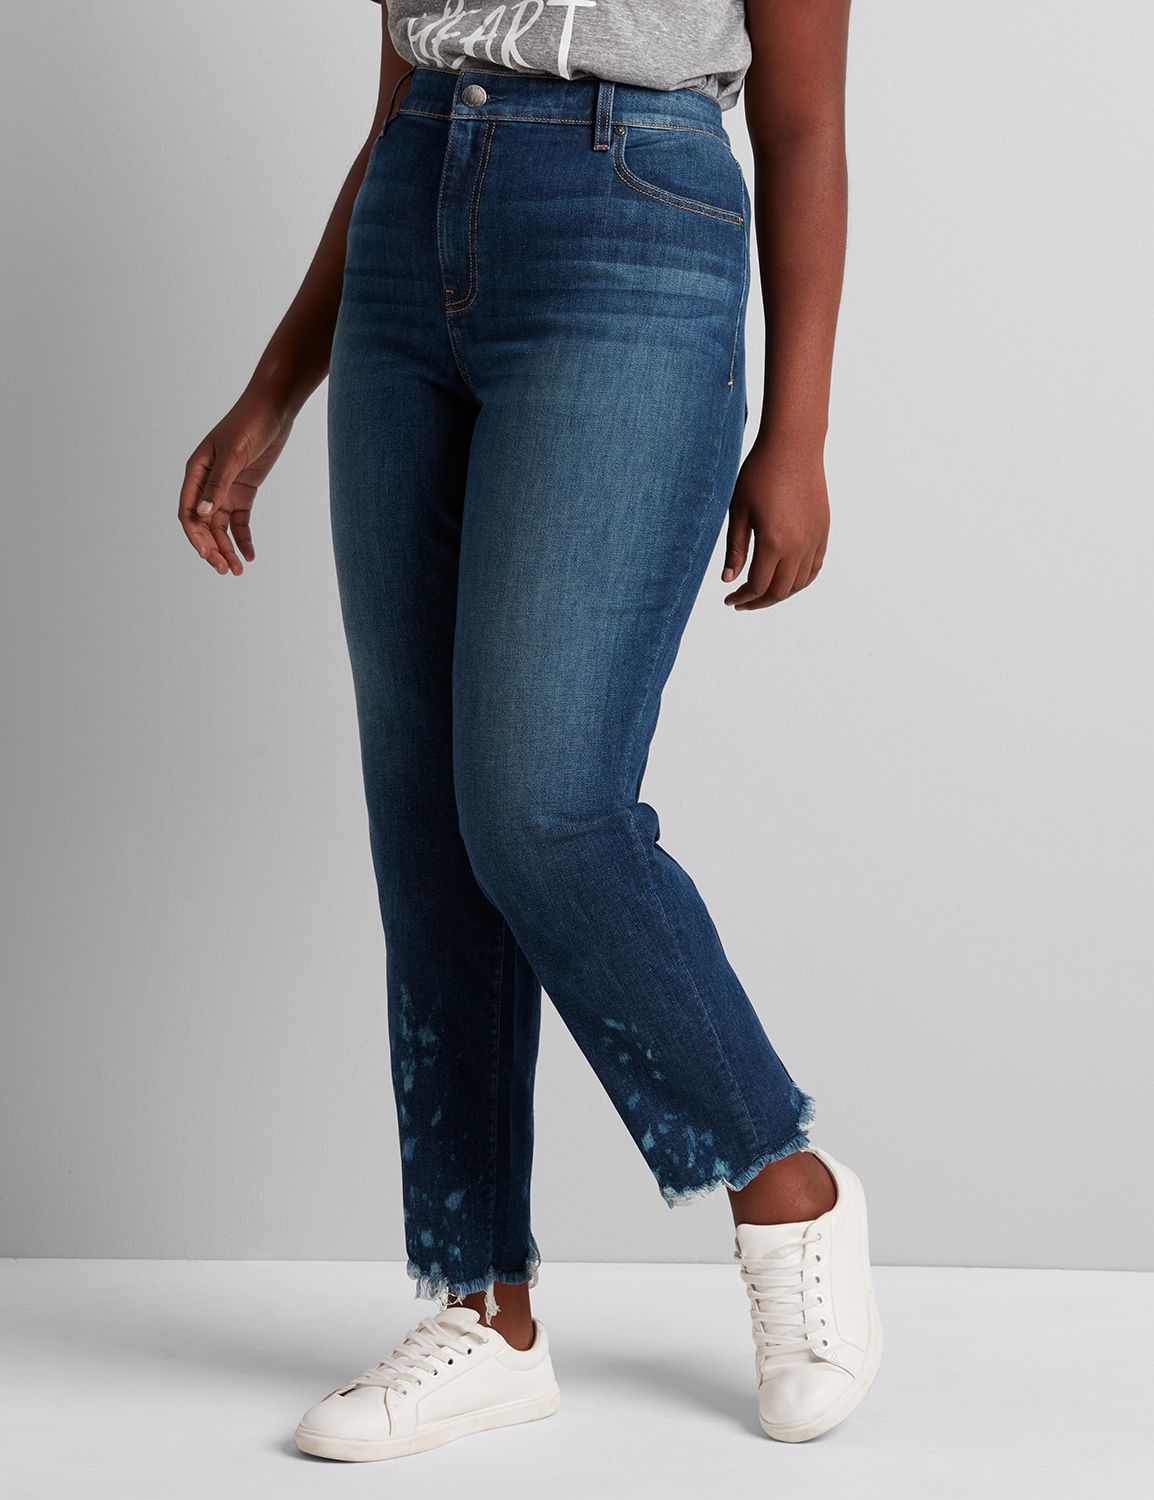 lane bryant girlfriend jeans